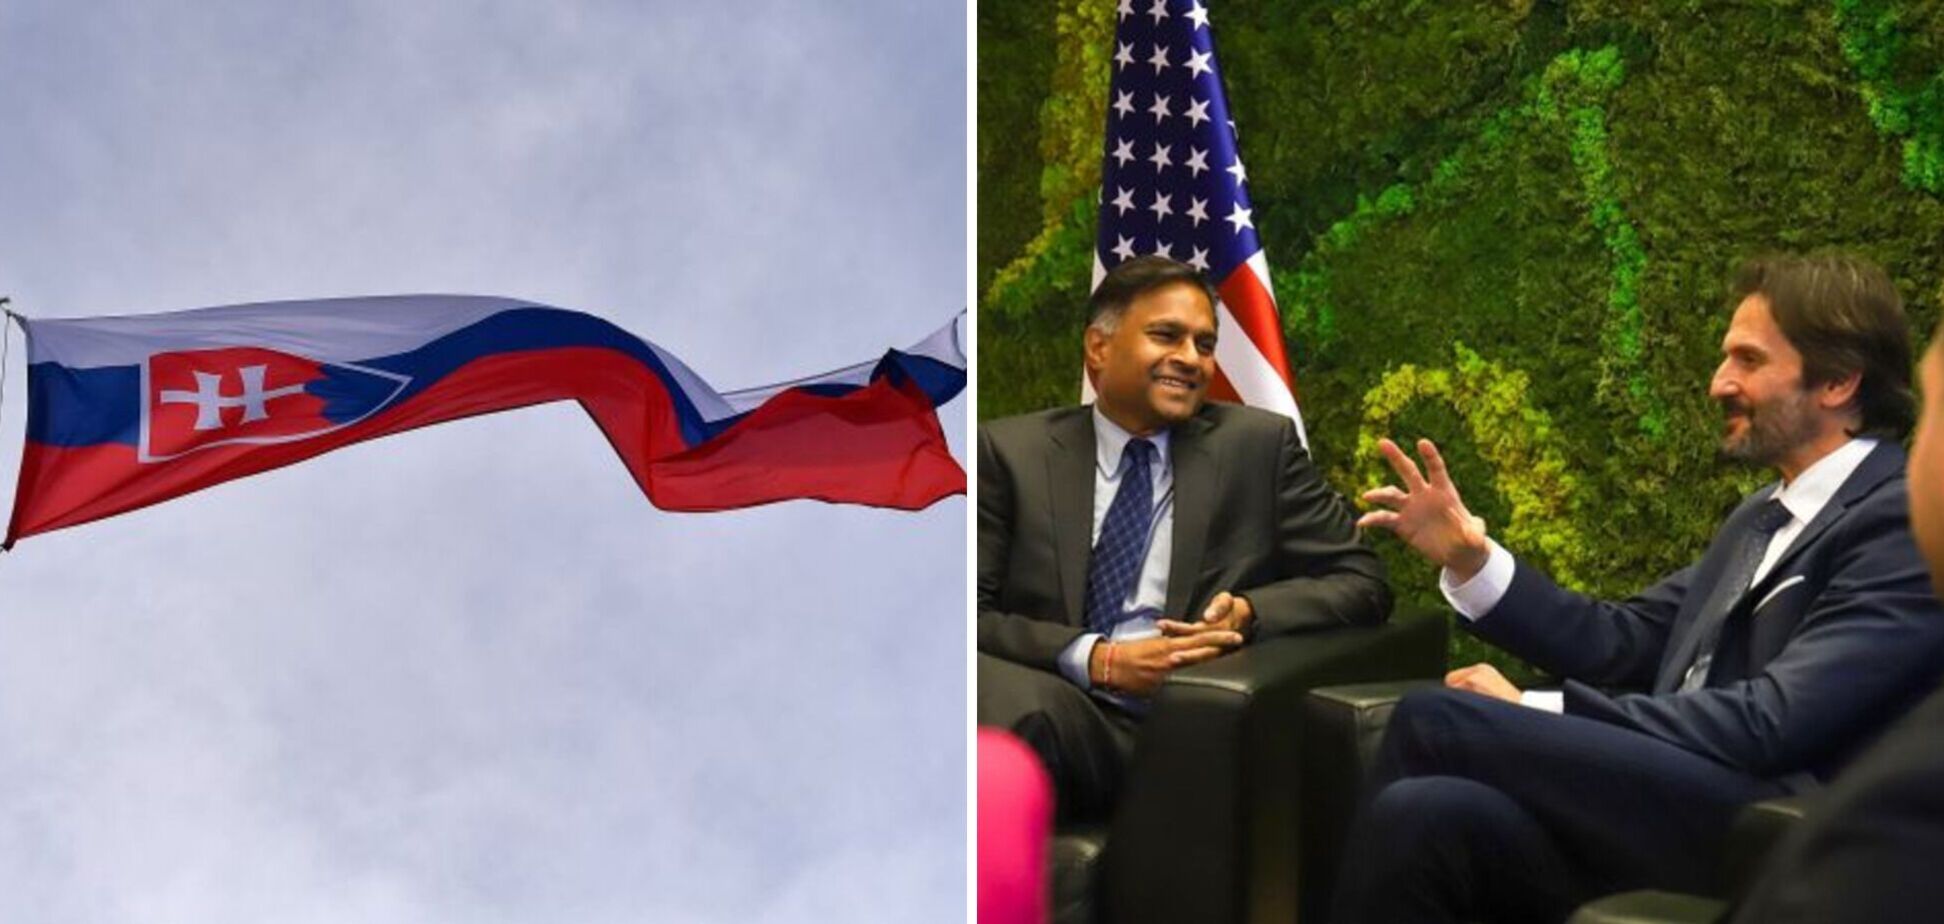 Словакия хочет пересмотреть оборонное соглашение с США: что именно не устраивает правительство Фицо